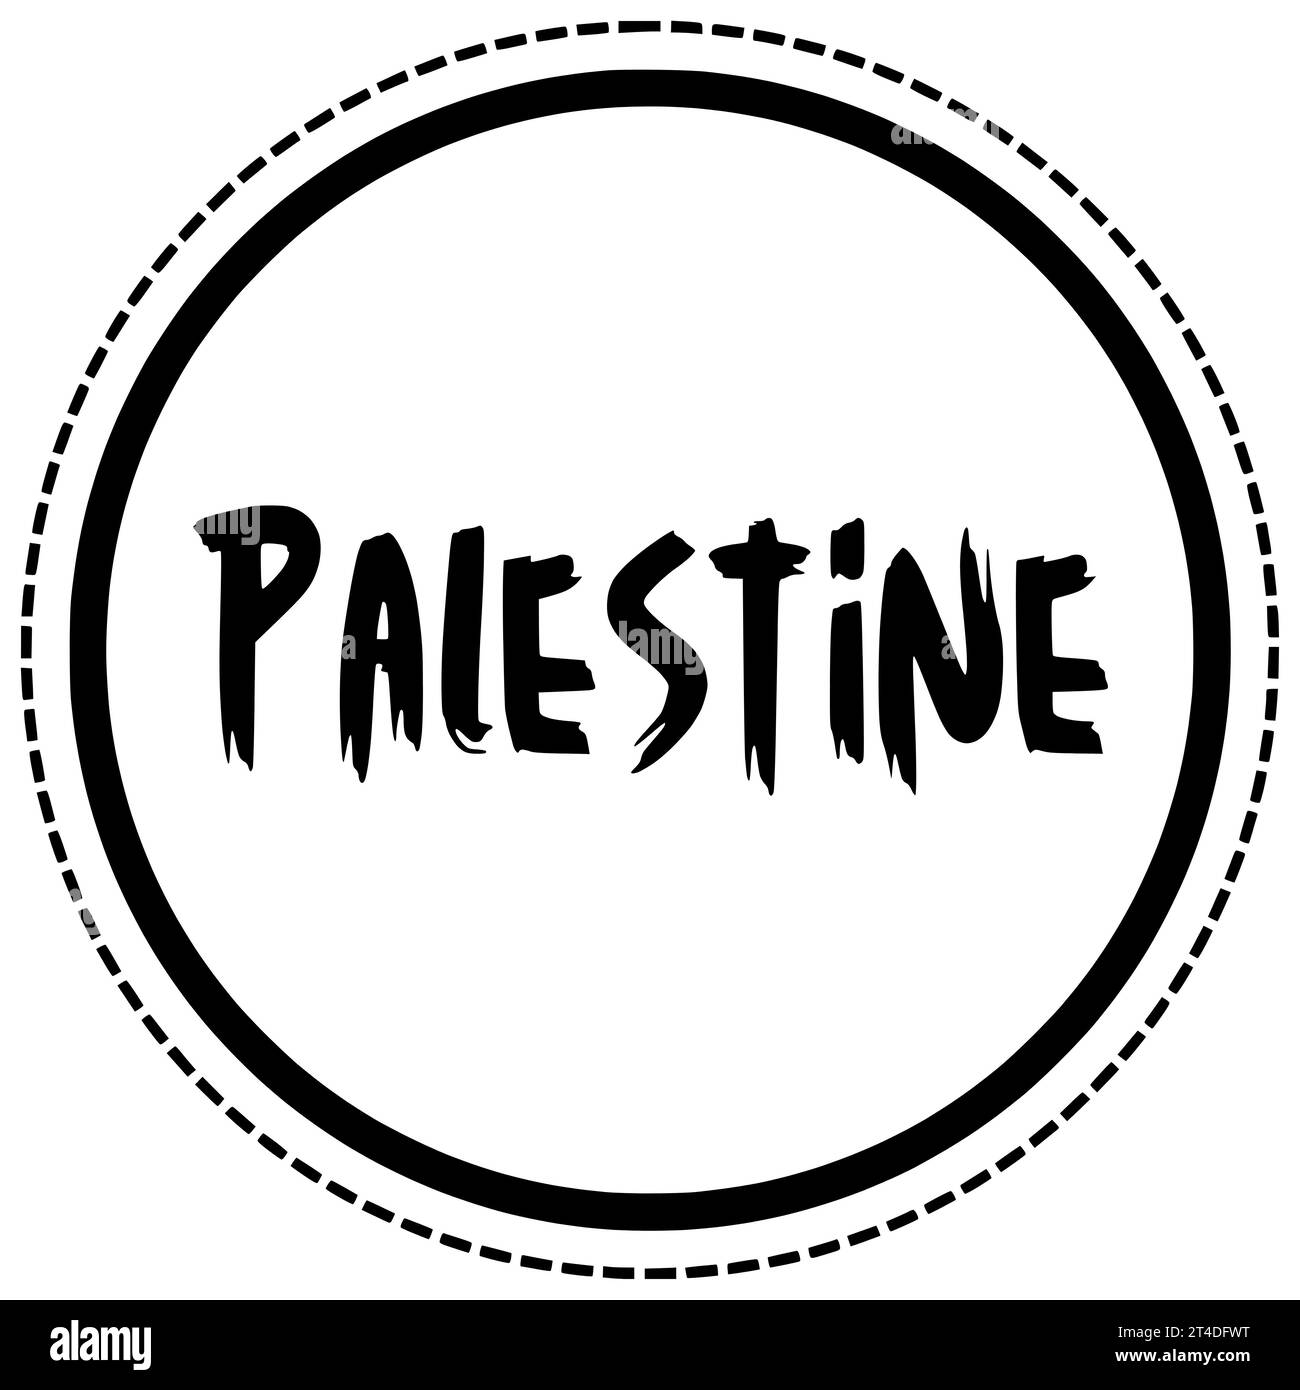 respect noir palestine silhouette patriotisme illustration drapeau icône liberté logo texte typographie guerre indépendance israël politique conflit national Banque D'Images